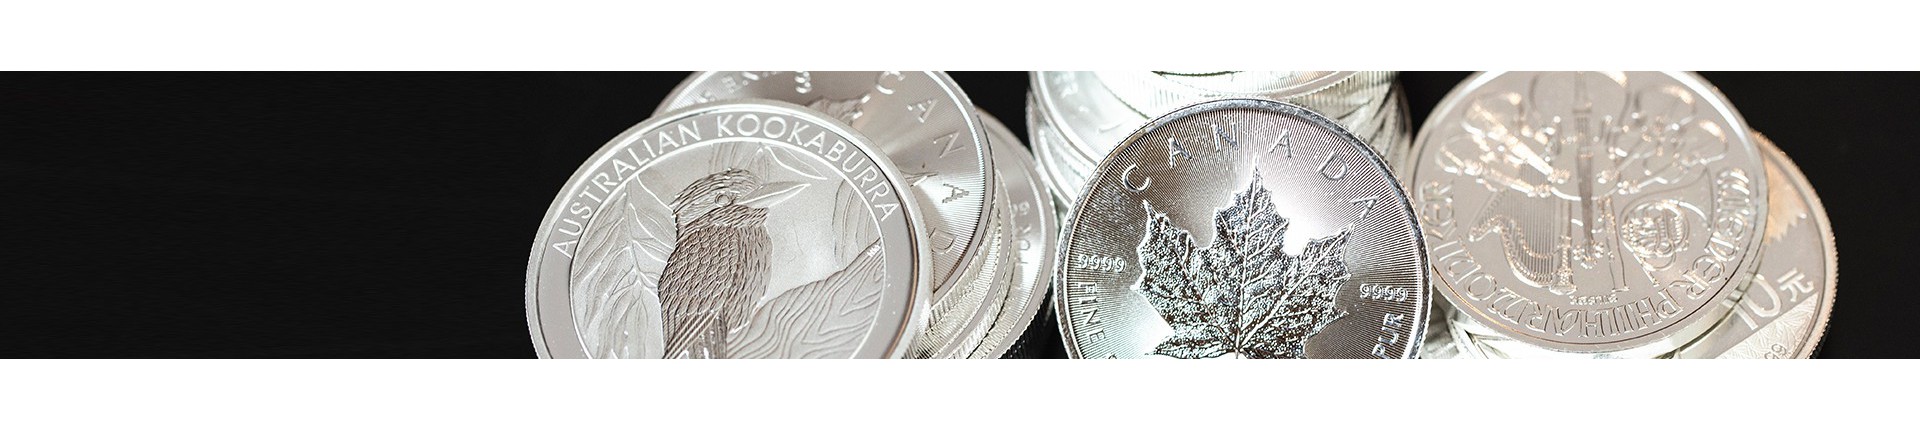 Zilveren munten kopen? | Veilig & betrouwbaar | Goudwisselkantoor